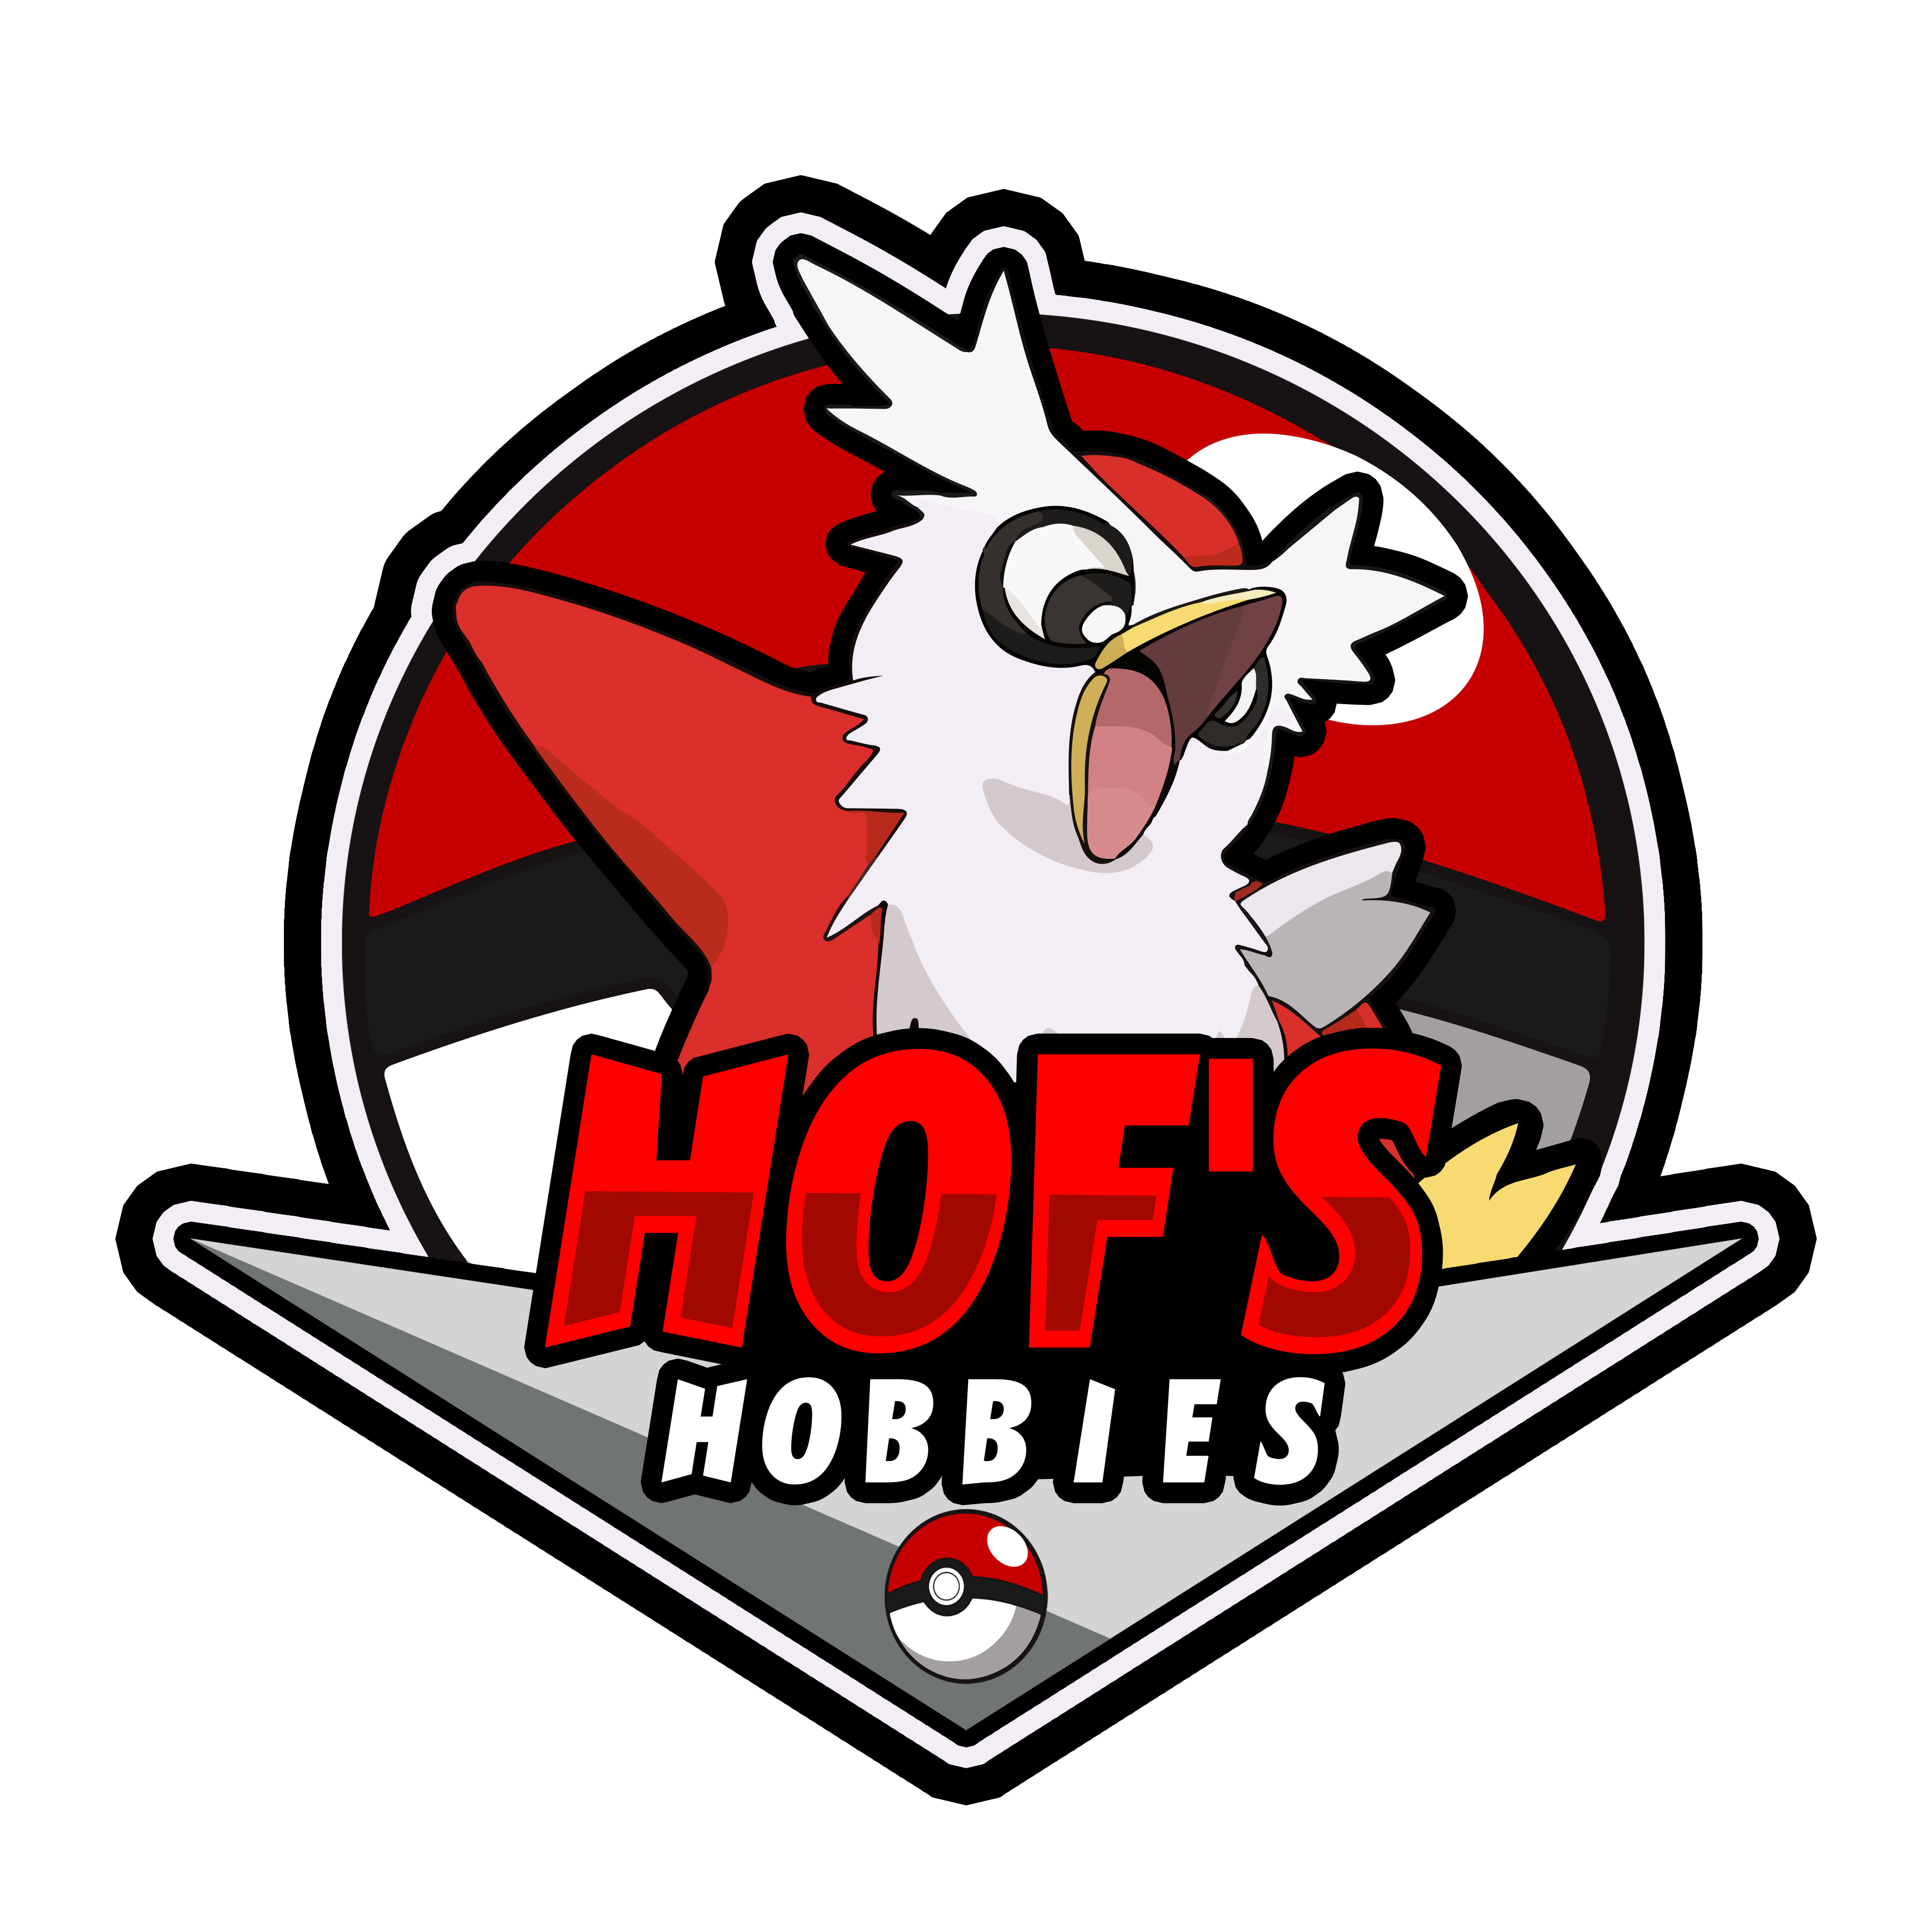 Hofs Hobbies